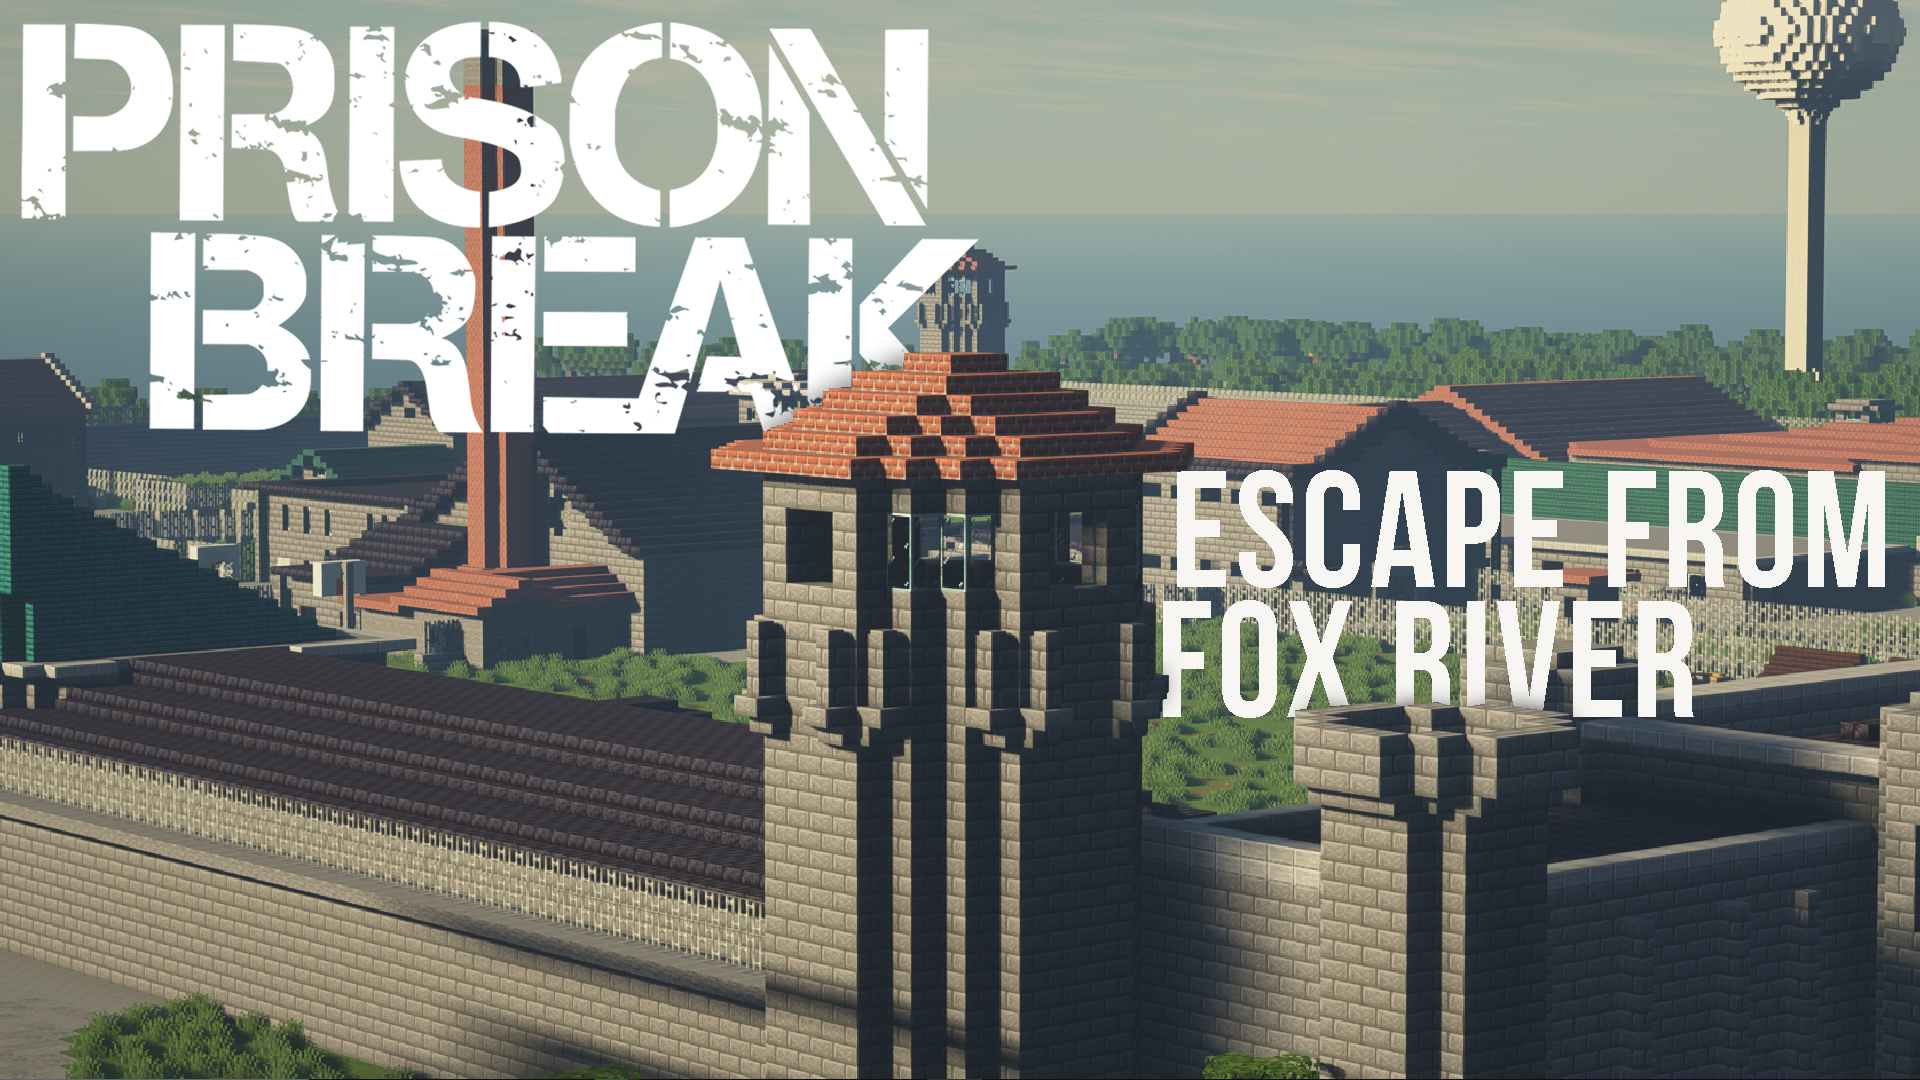 Télécharger Prison Break - Escape from Fox River pour Minecraft 1.16.5